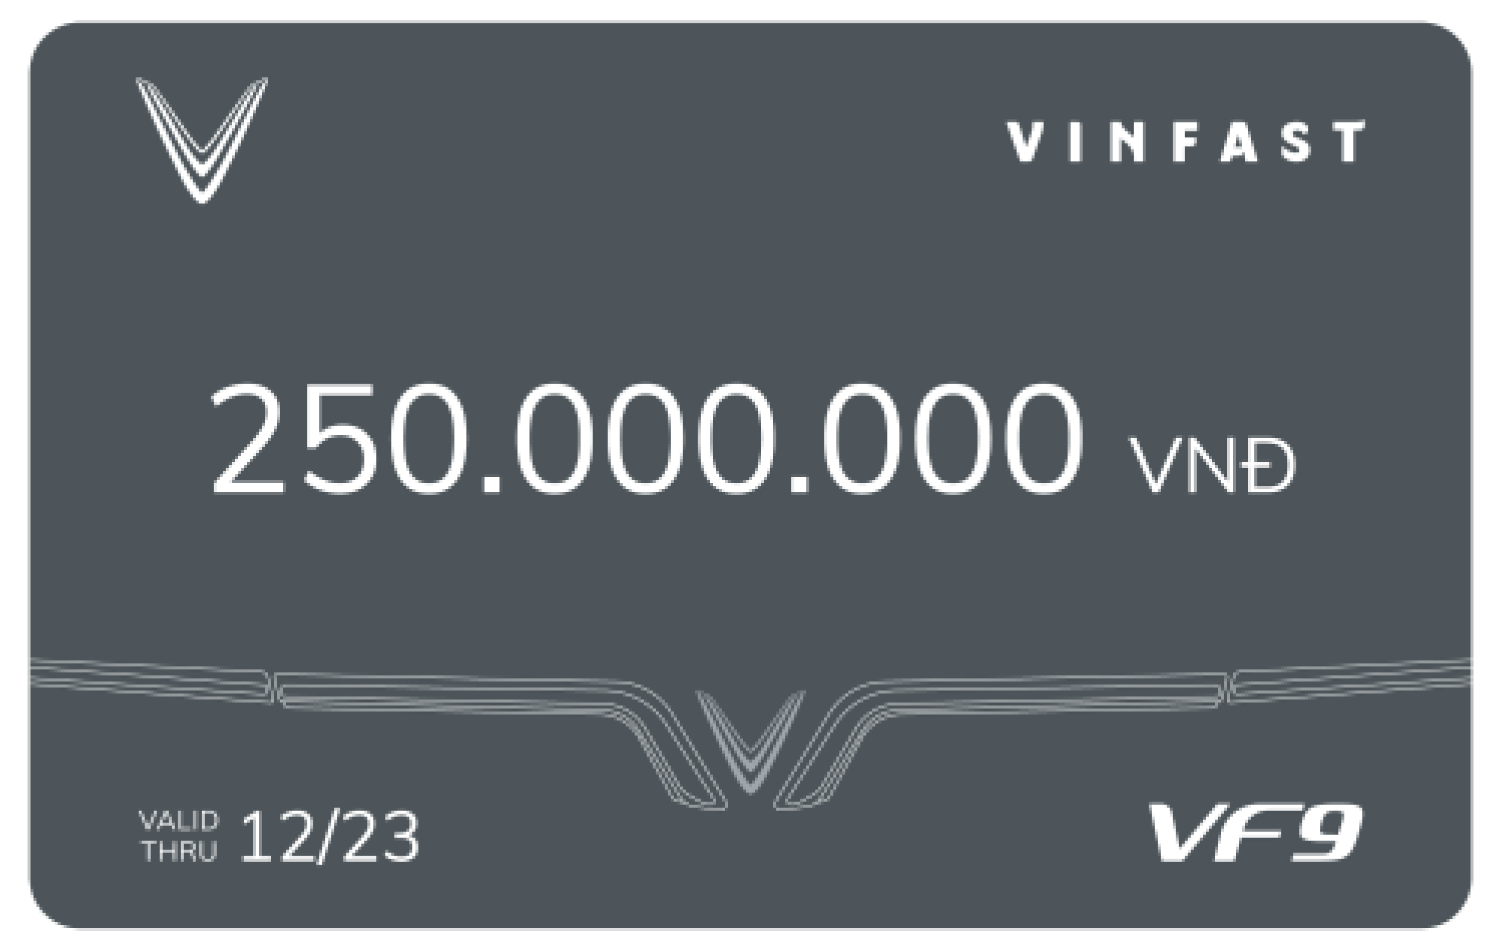 voucher thanh toán 250 triệu khi đặt cọc vf9